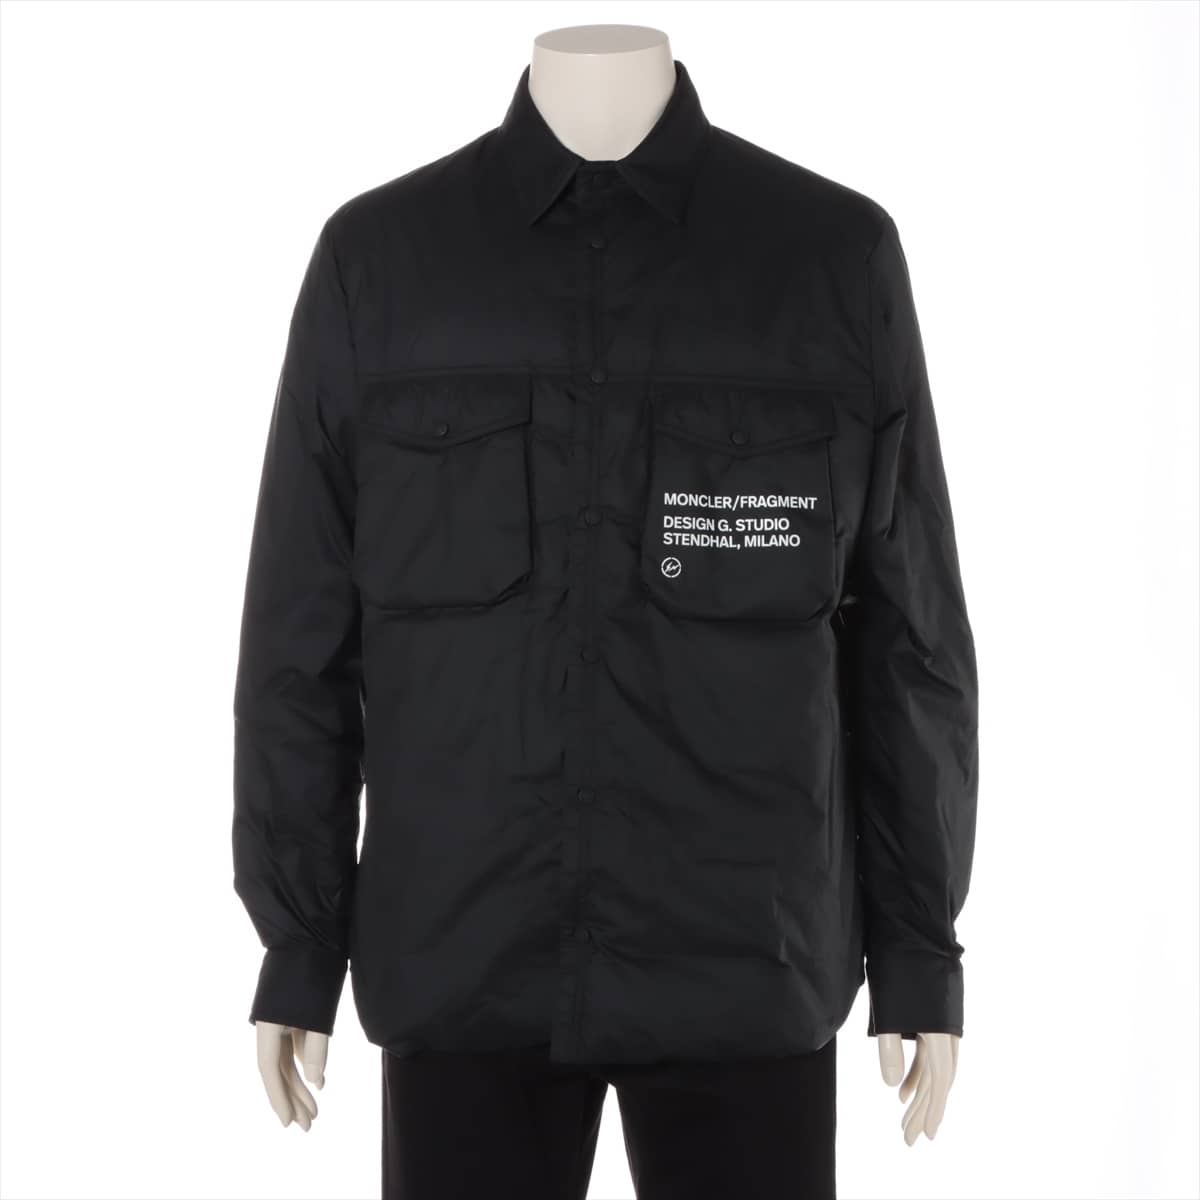 Moncler Genius Fragment 20 years Nylon Down jacket 2 Men's Black  MAZEN HIROSHI FUJIWARA